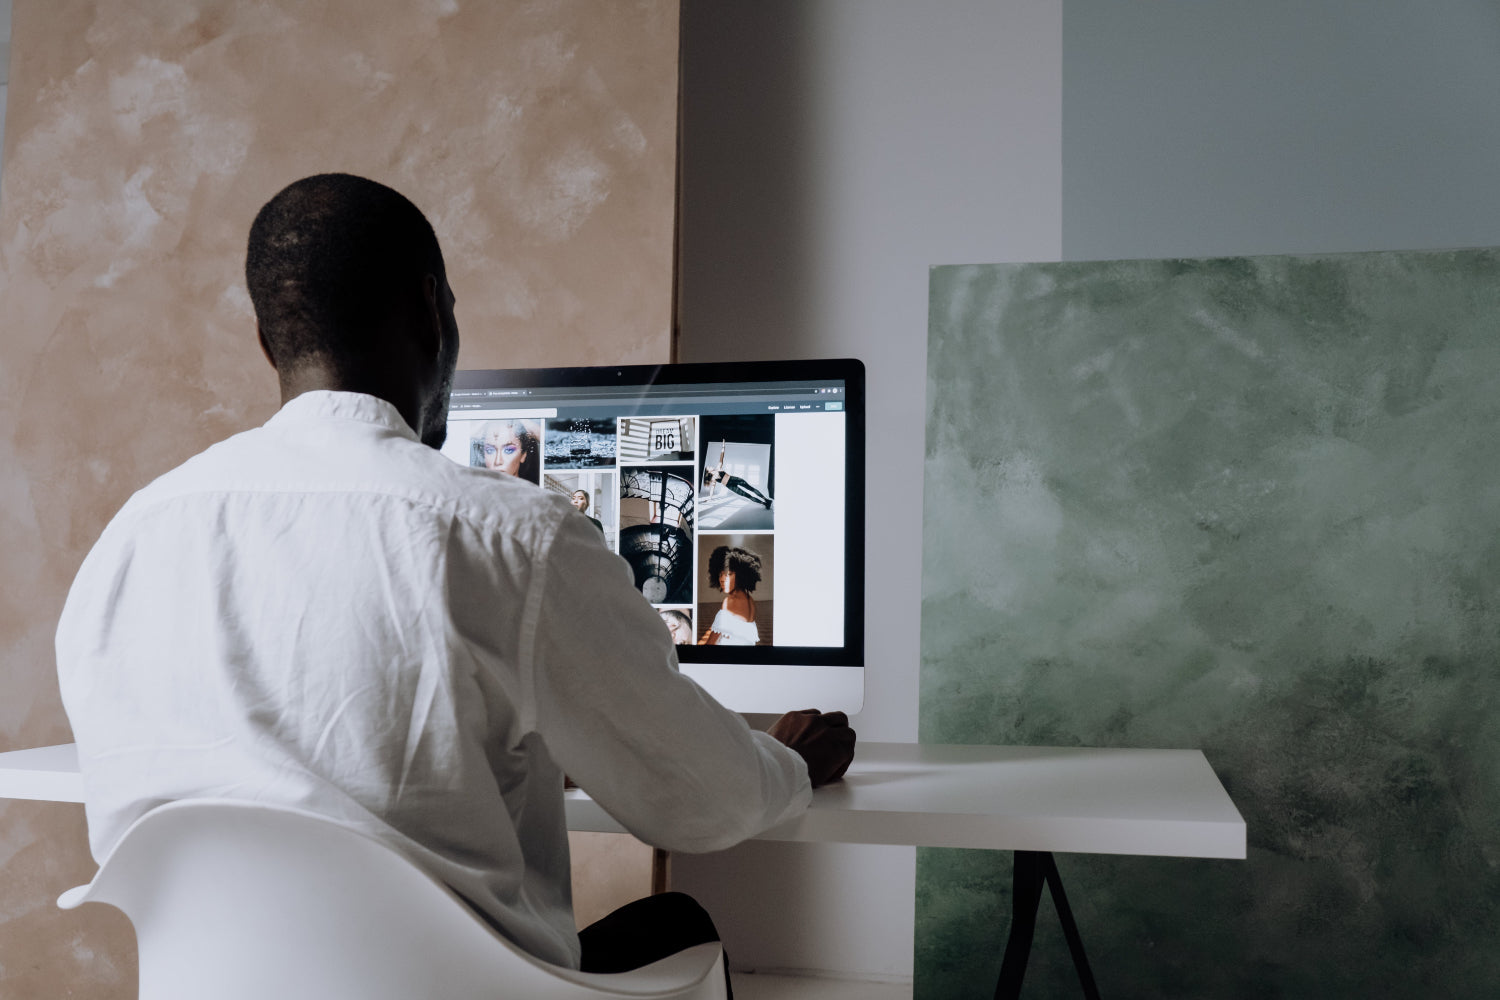 A man browses photos on a desktop computer